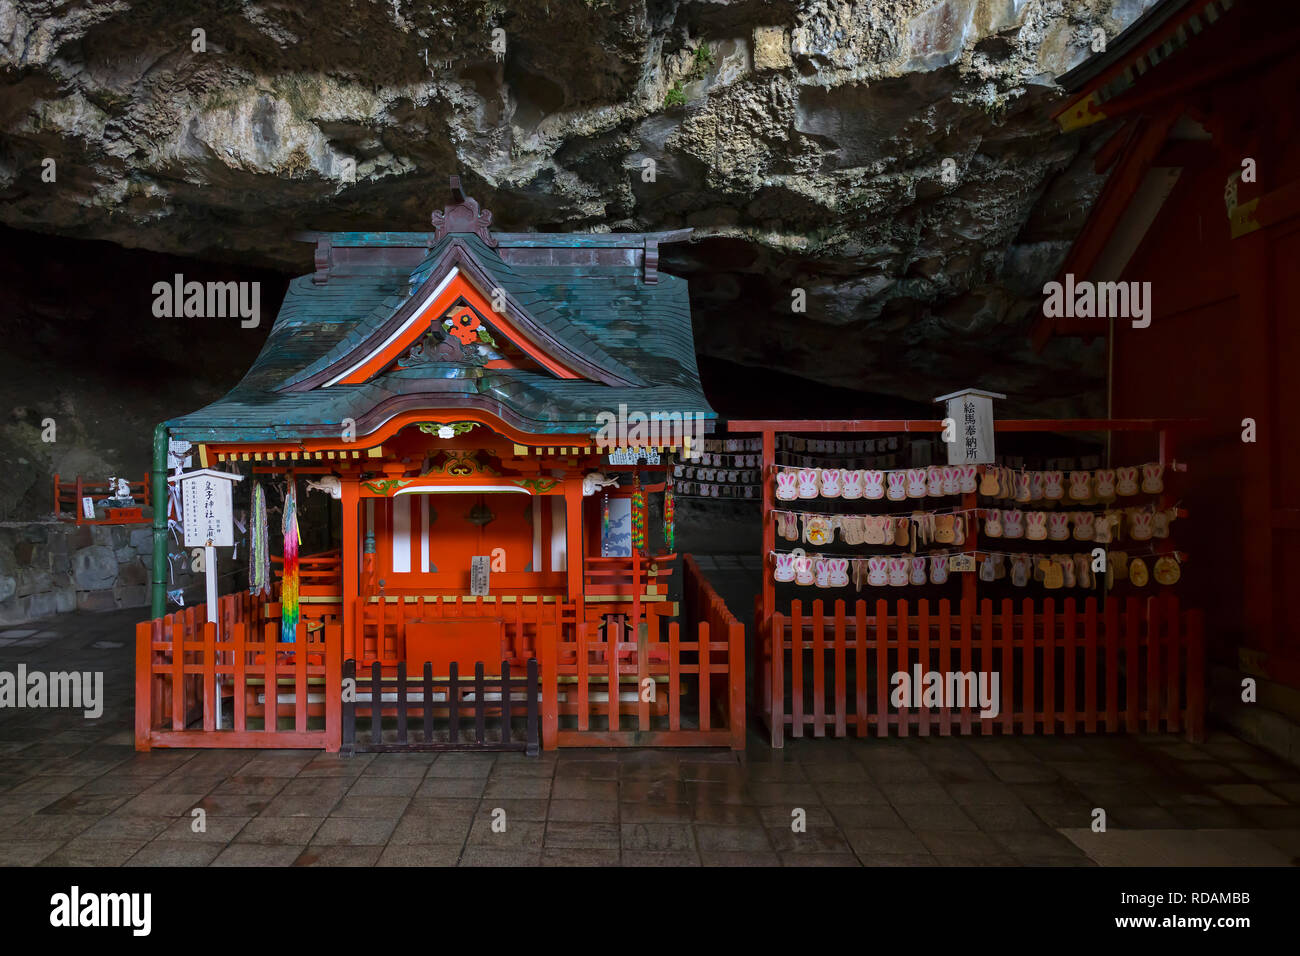 Miyazaki, Japon - 6 novembre, 2018 : Le sanctuaire Udo peint de couleurs vives, est situé dans une grotte à flanc de falaise avec ema lapin à côté Banque D'Images